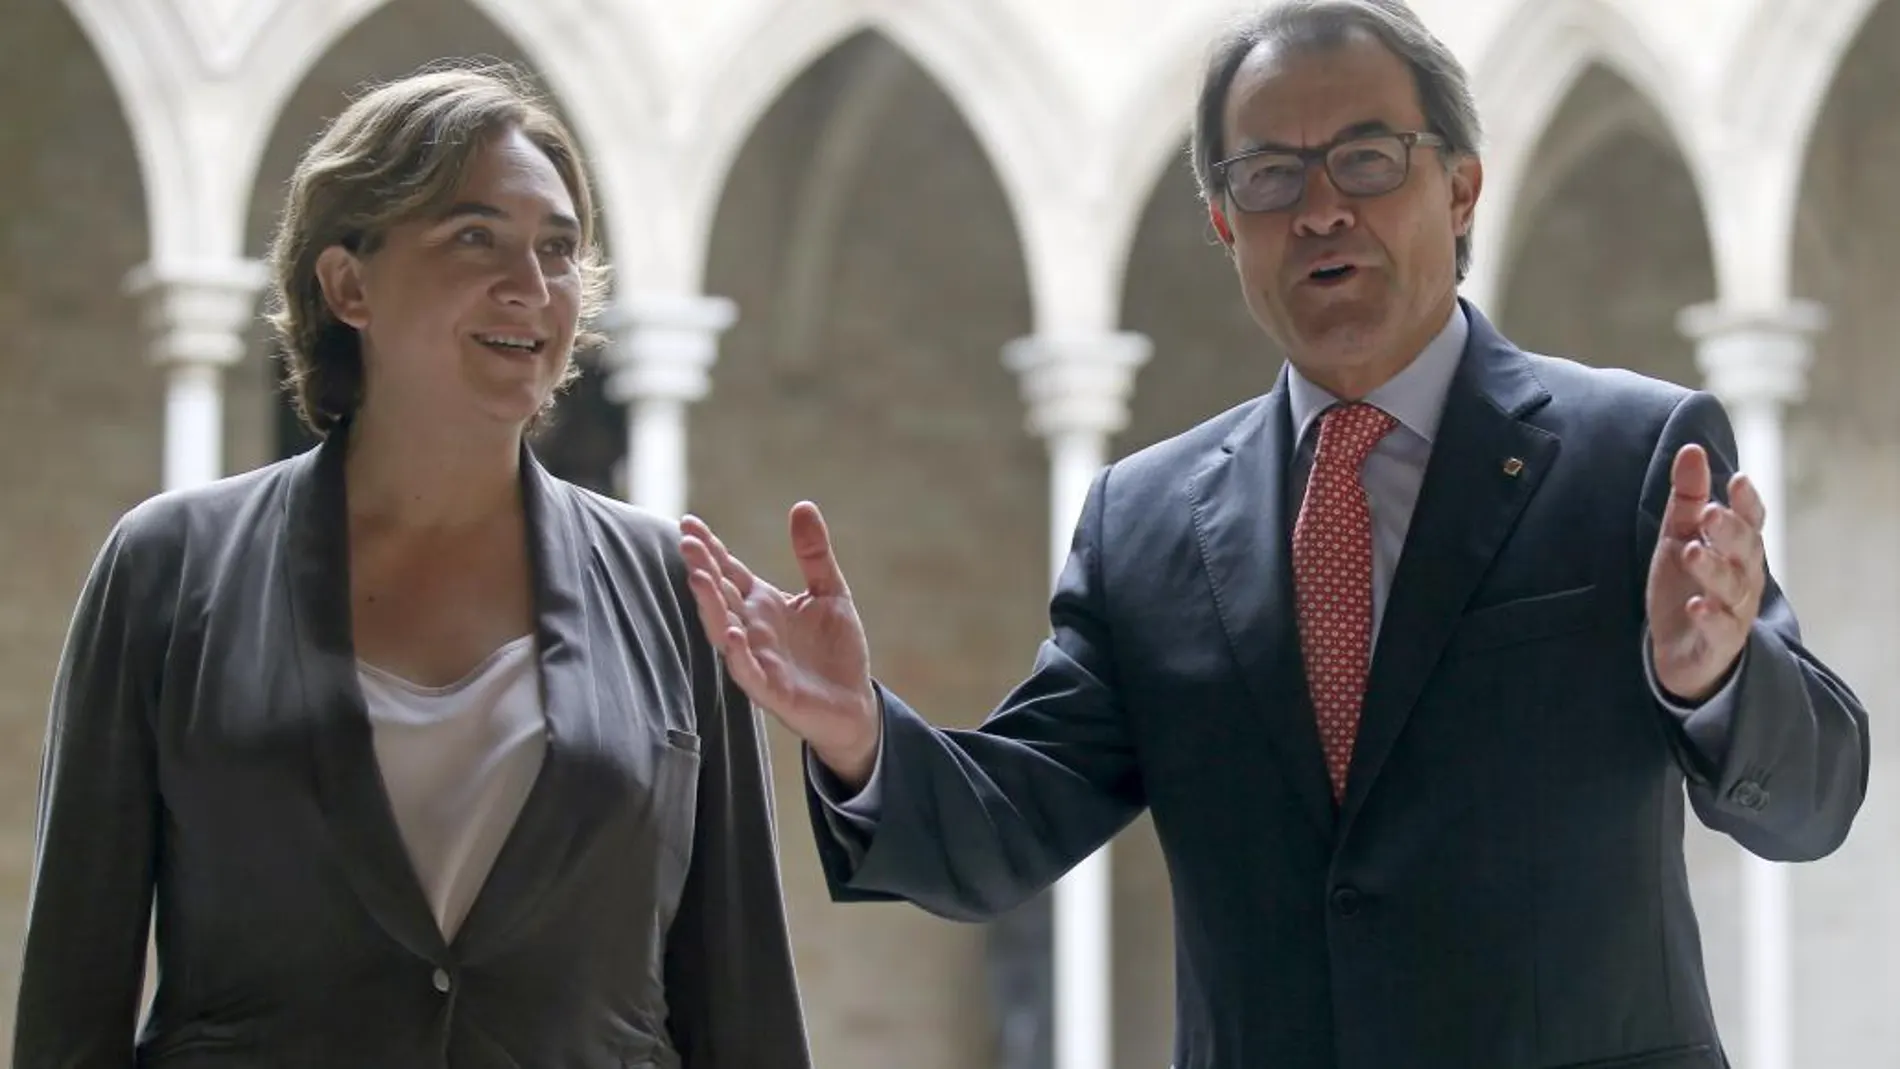 El presidente de la Generalitat, Artur Mas, recibe a la alcaldesa de Barcelona, Ada Colau, en la Generalitat